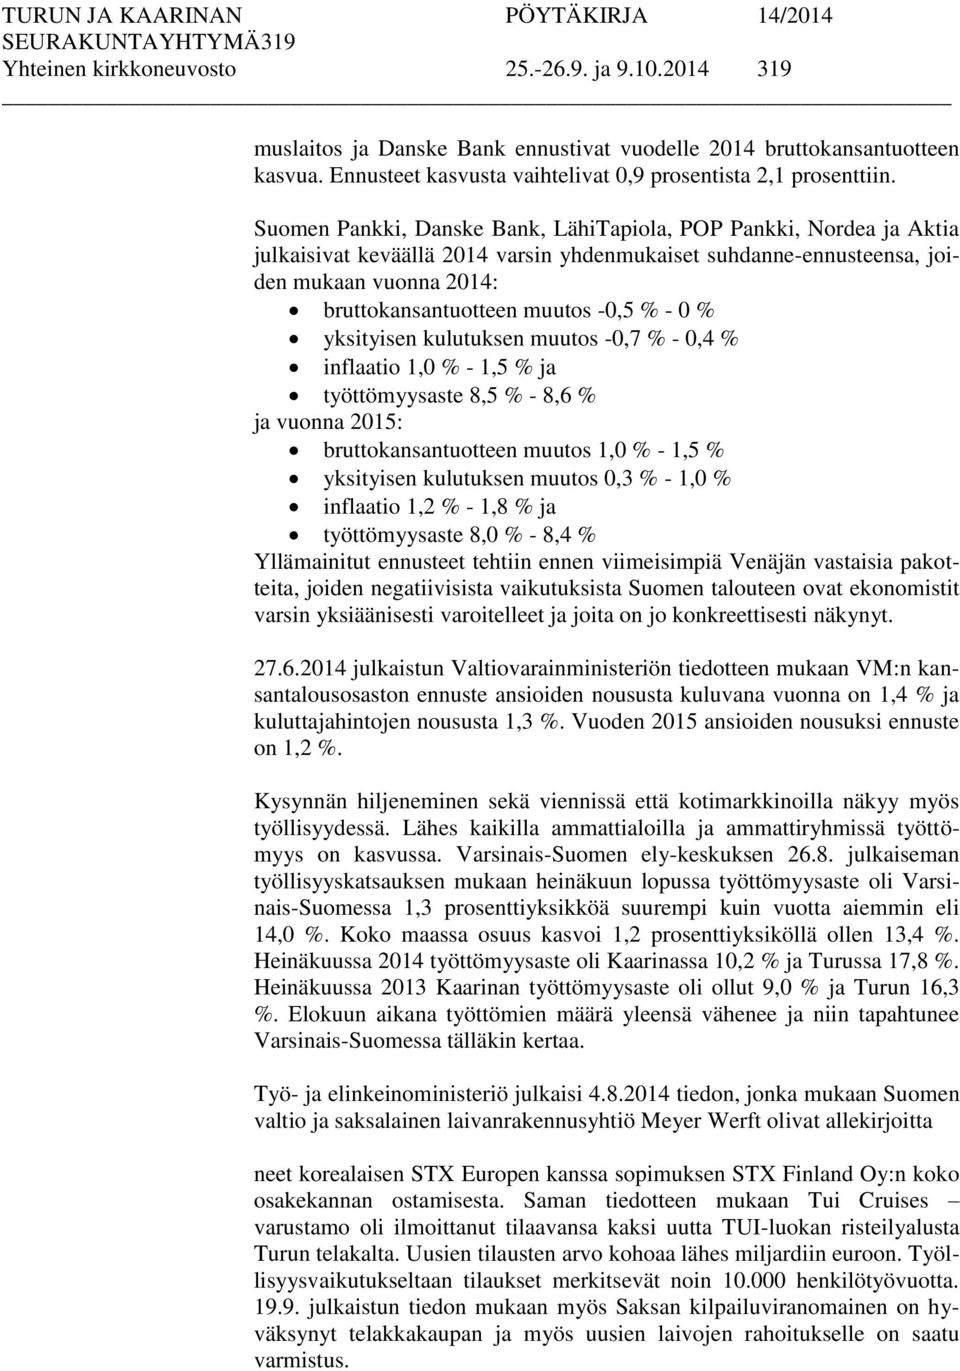 Suomen Pankki, Danske Bank, LähiTapiola, POP Pankki, Nordea ja Aktia julkaisivat keväällä 2014 varsin yhdenmukaiset suhdanne-ennusteensa, joiden mukaan vuonna 2014: bruttokansantuotteen muutos -0,5 %